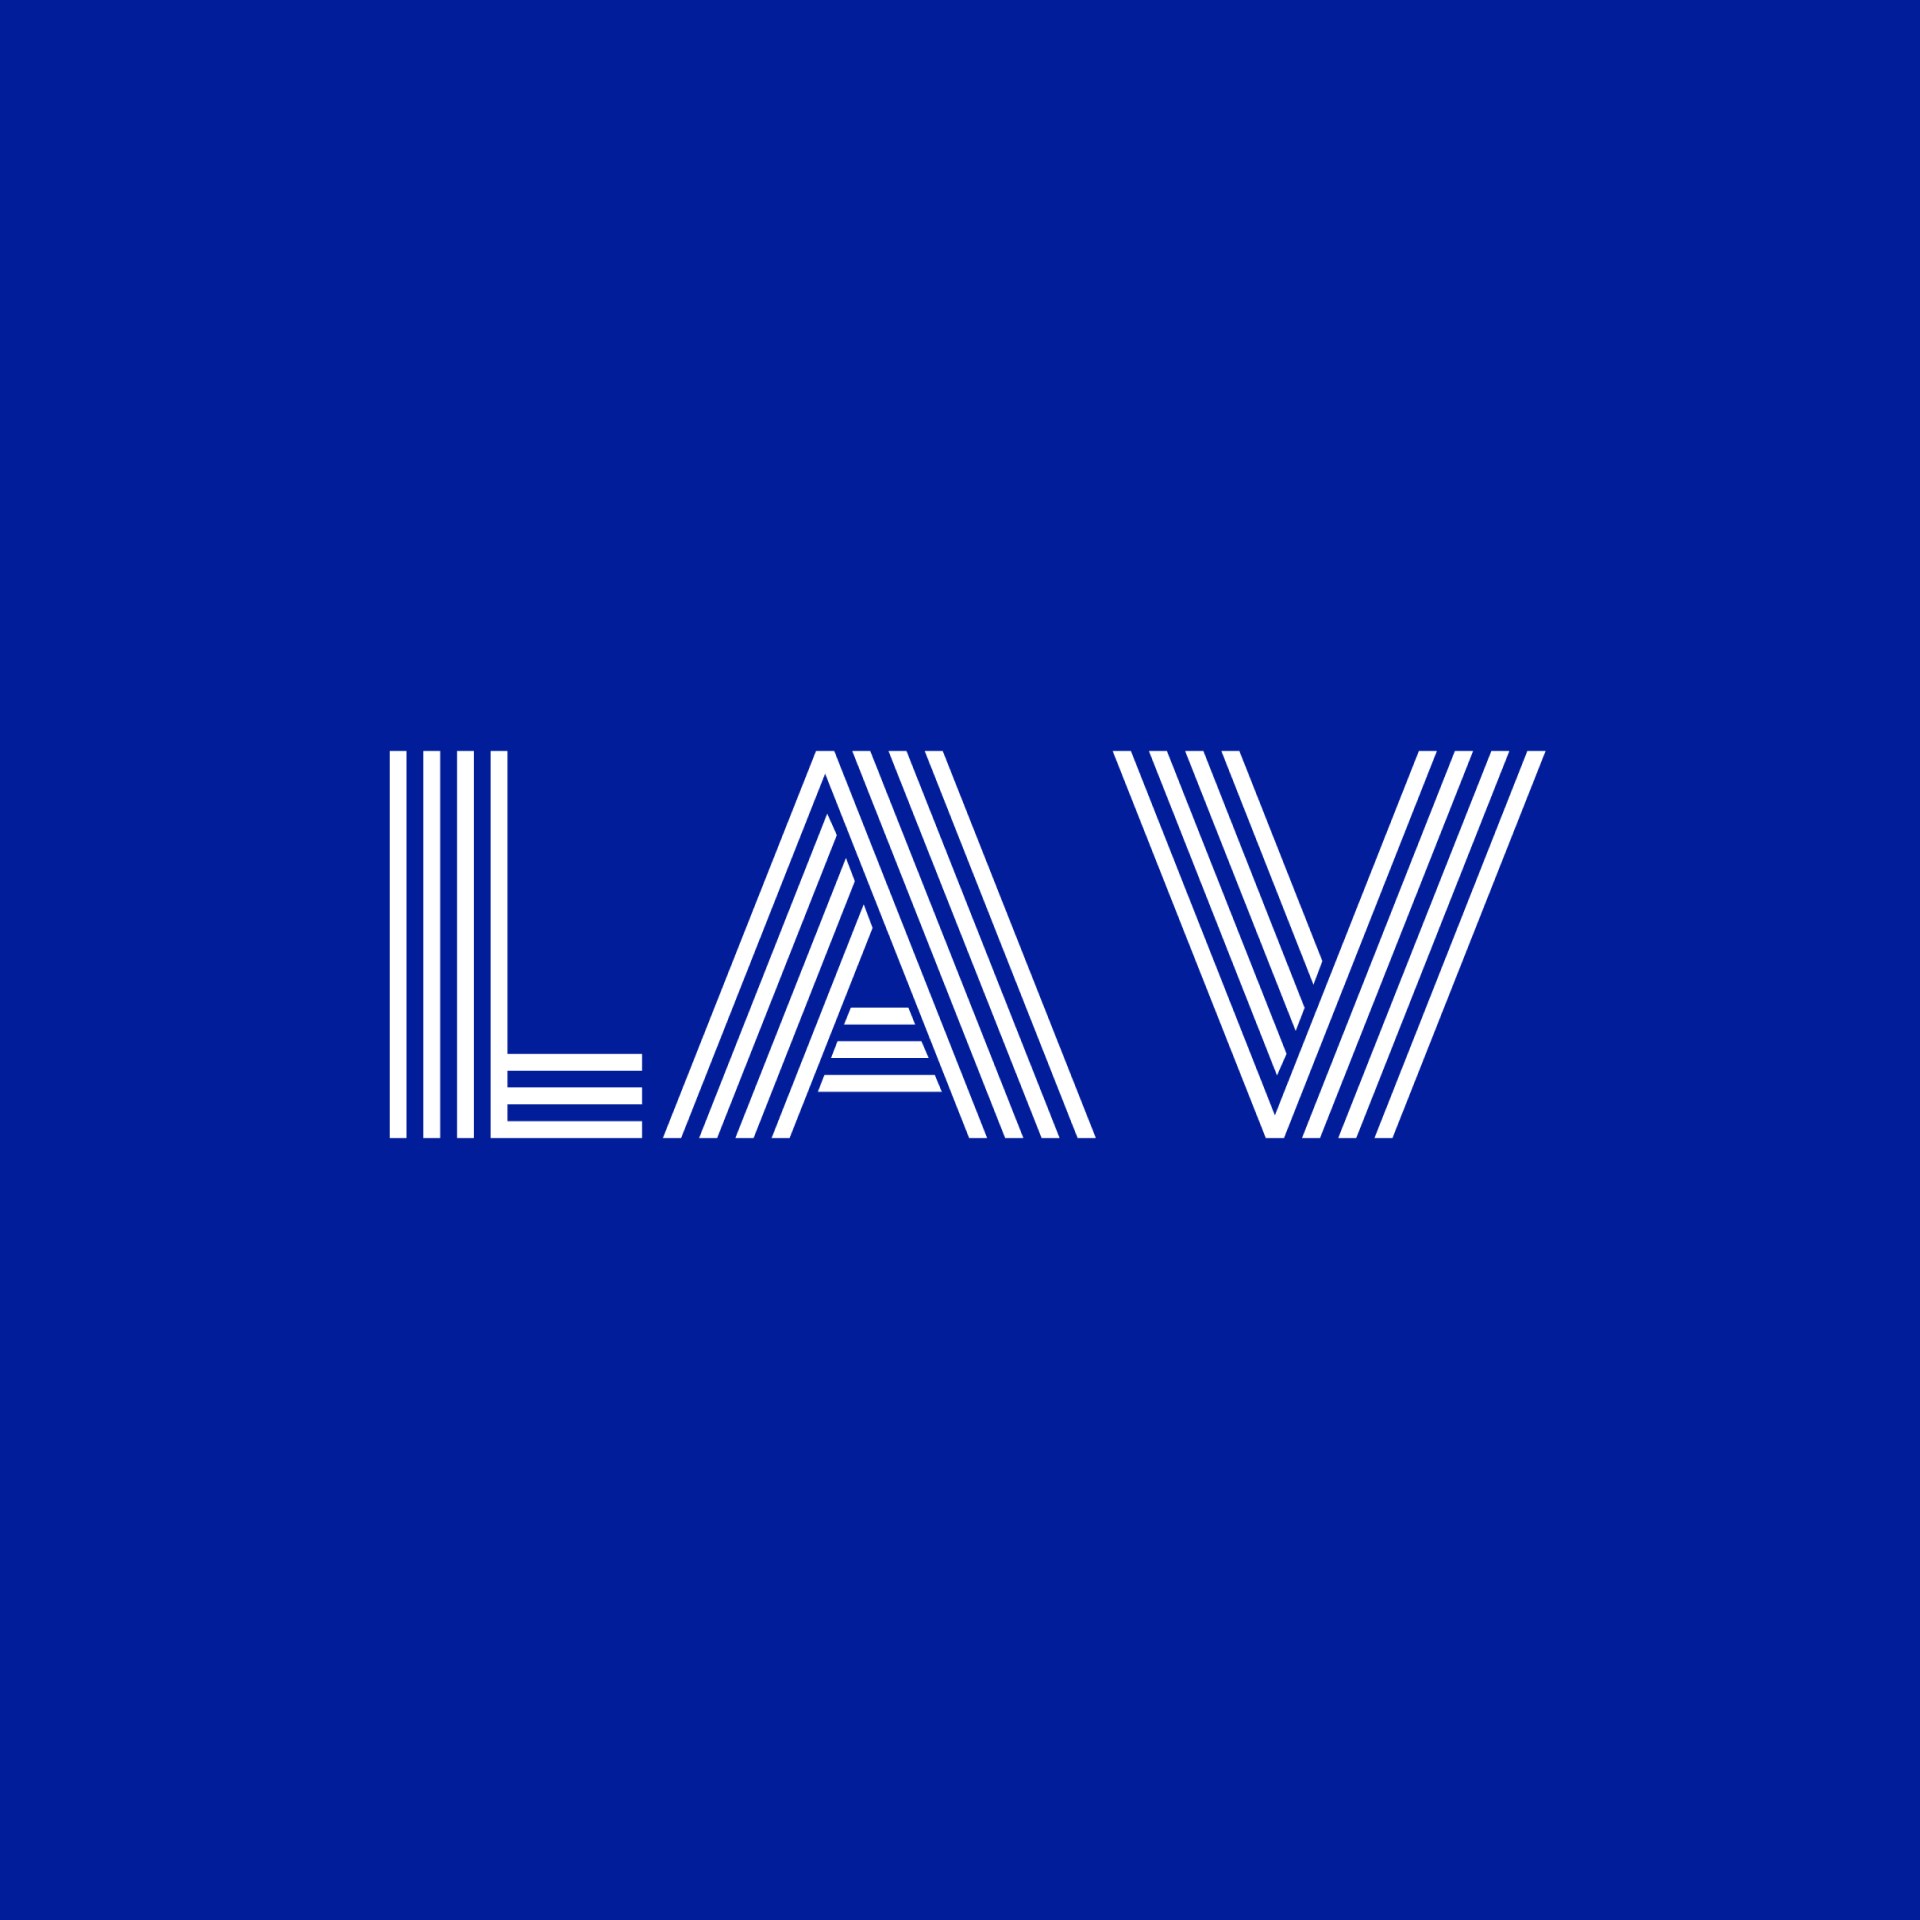 LAV LOGO CARD - BLUE